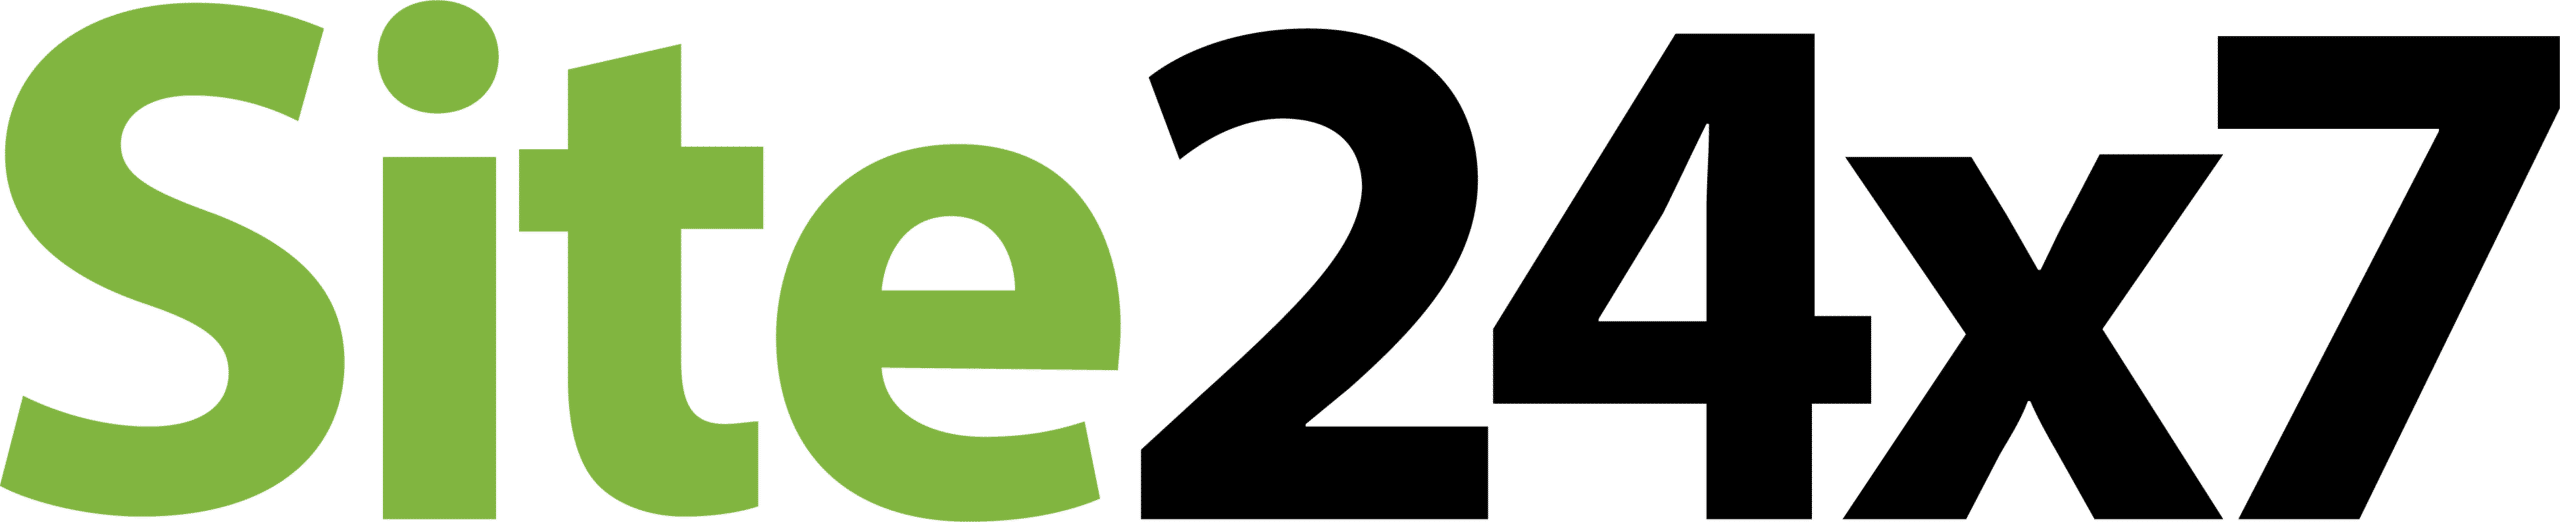 site24x7 logo web